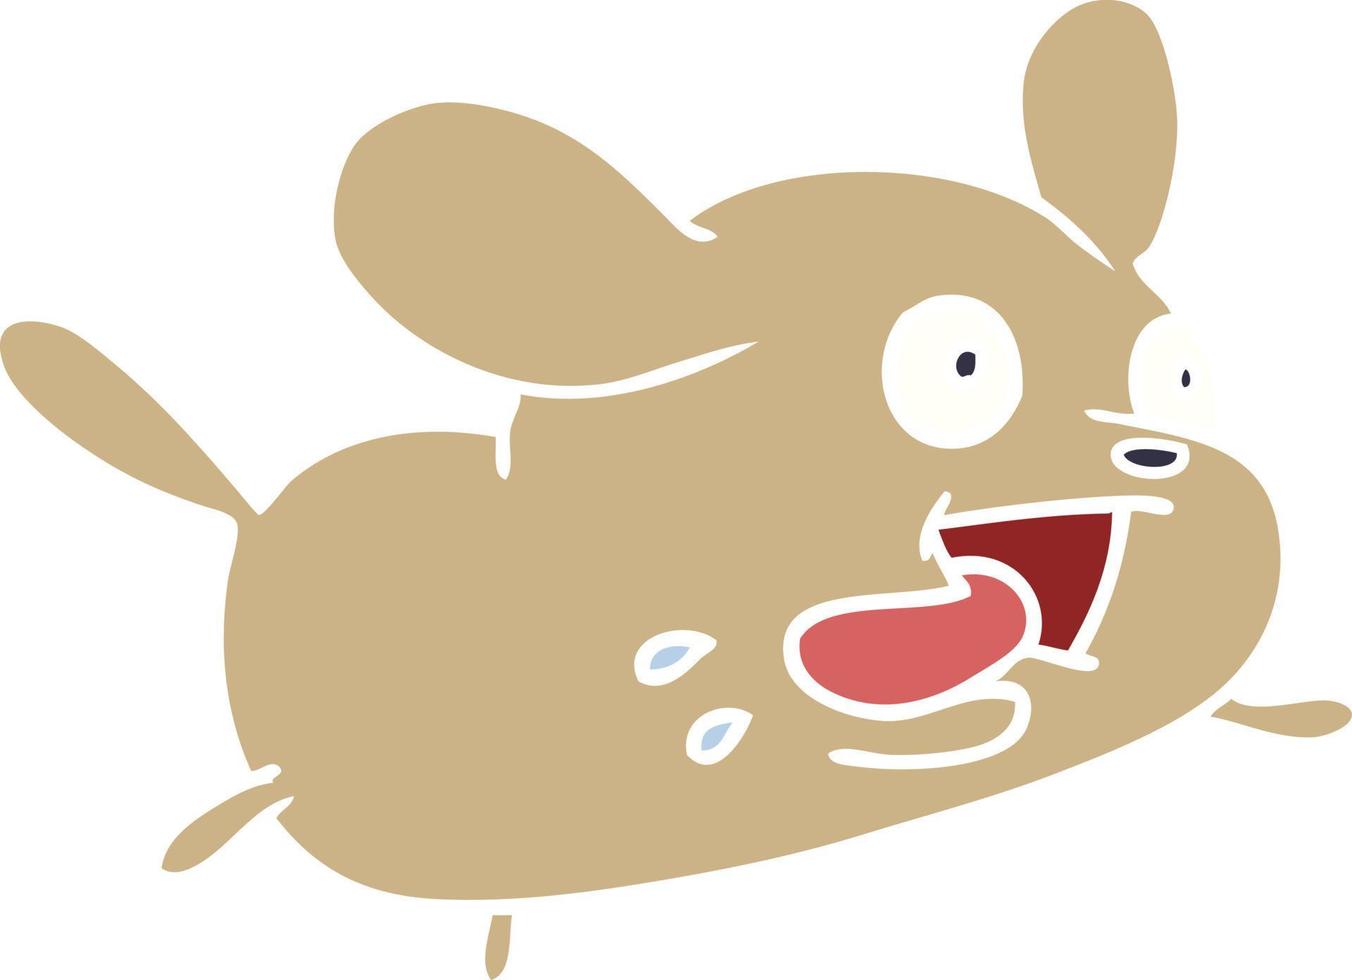 cartone animato di simpatico cane kawaii vettore